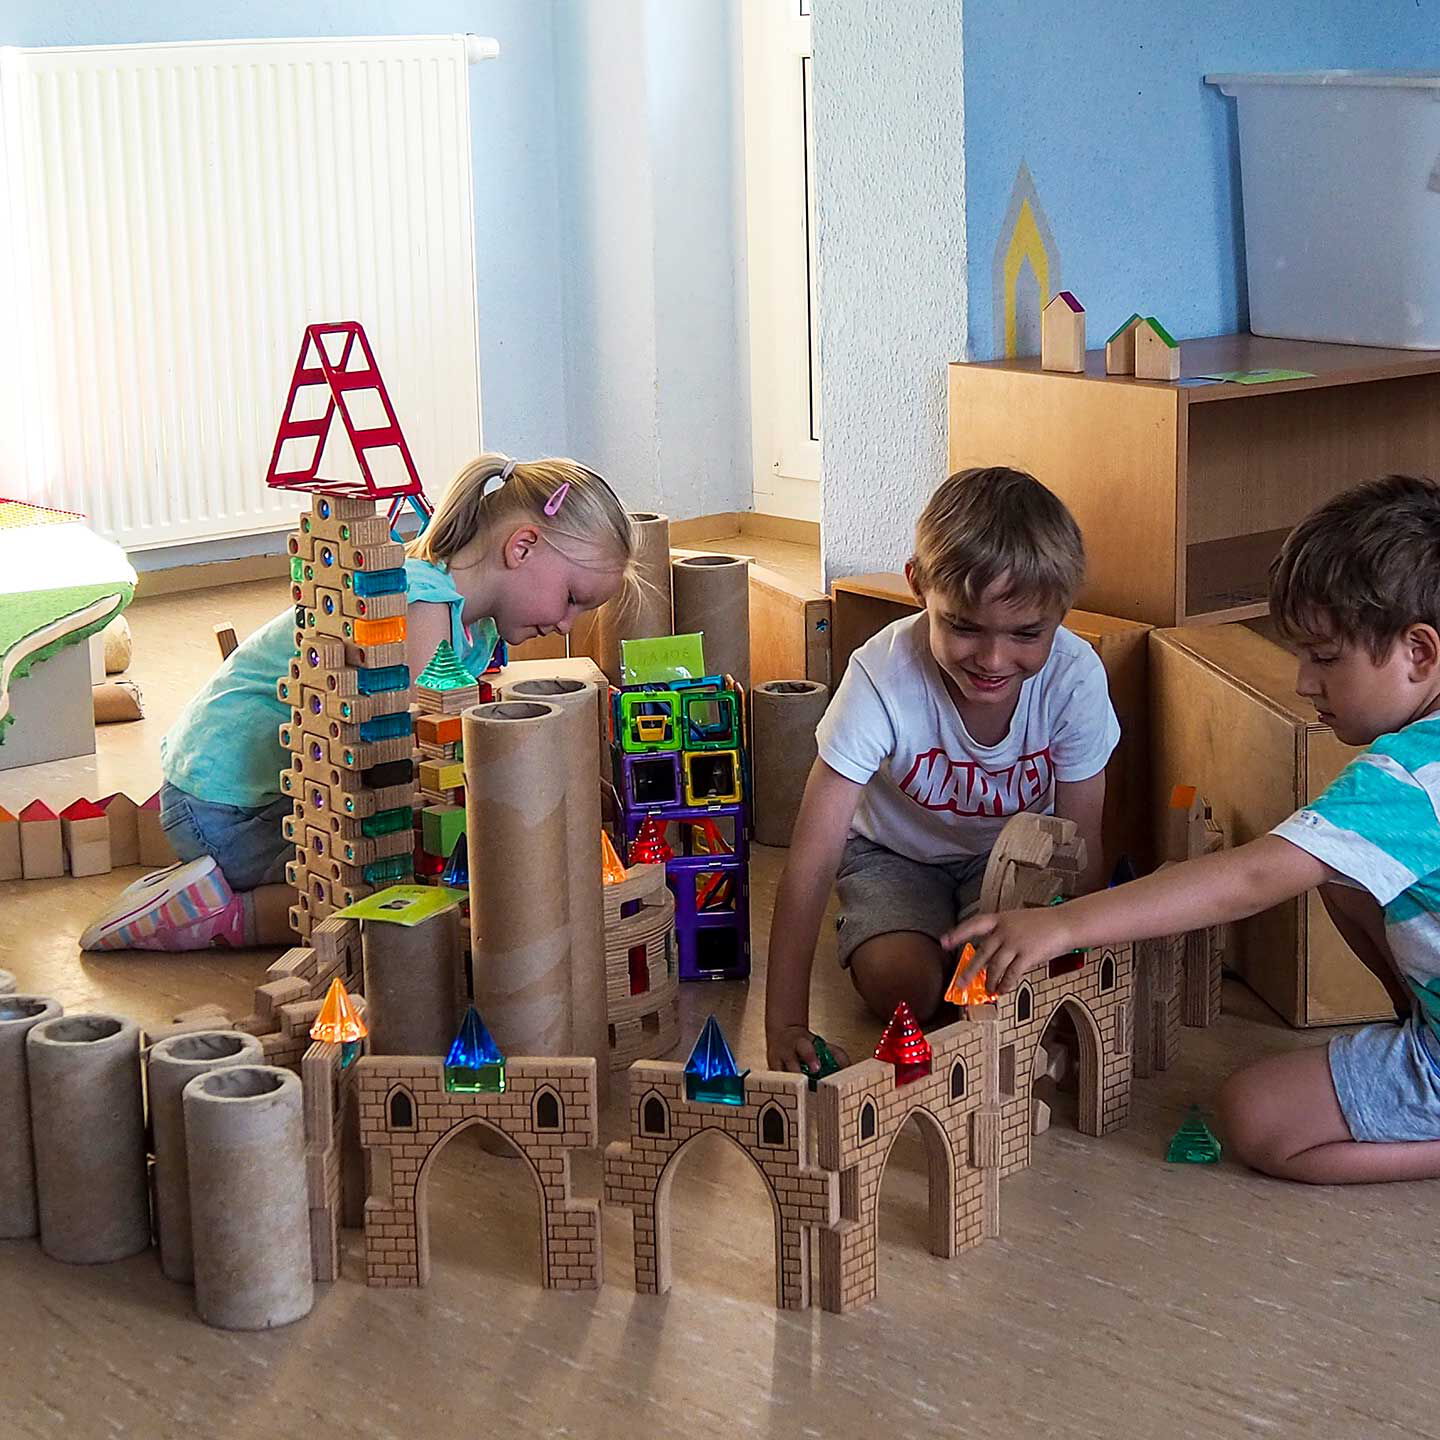 Im Bauzimmer spielen drei Kinder mit Bausteinen und haben viele Türme und Zäune aufgebaut.